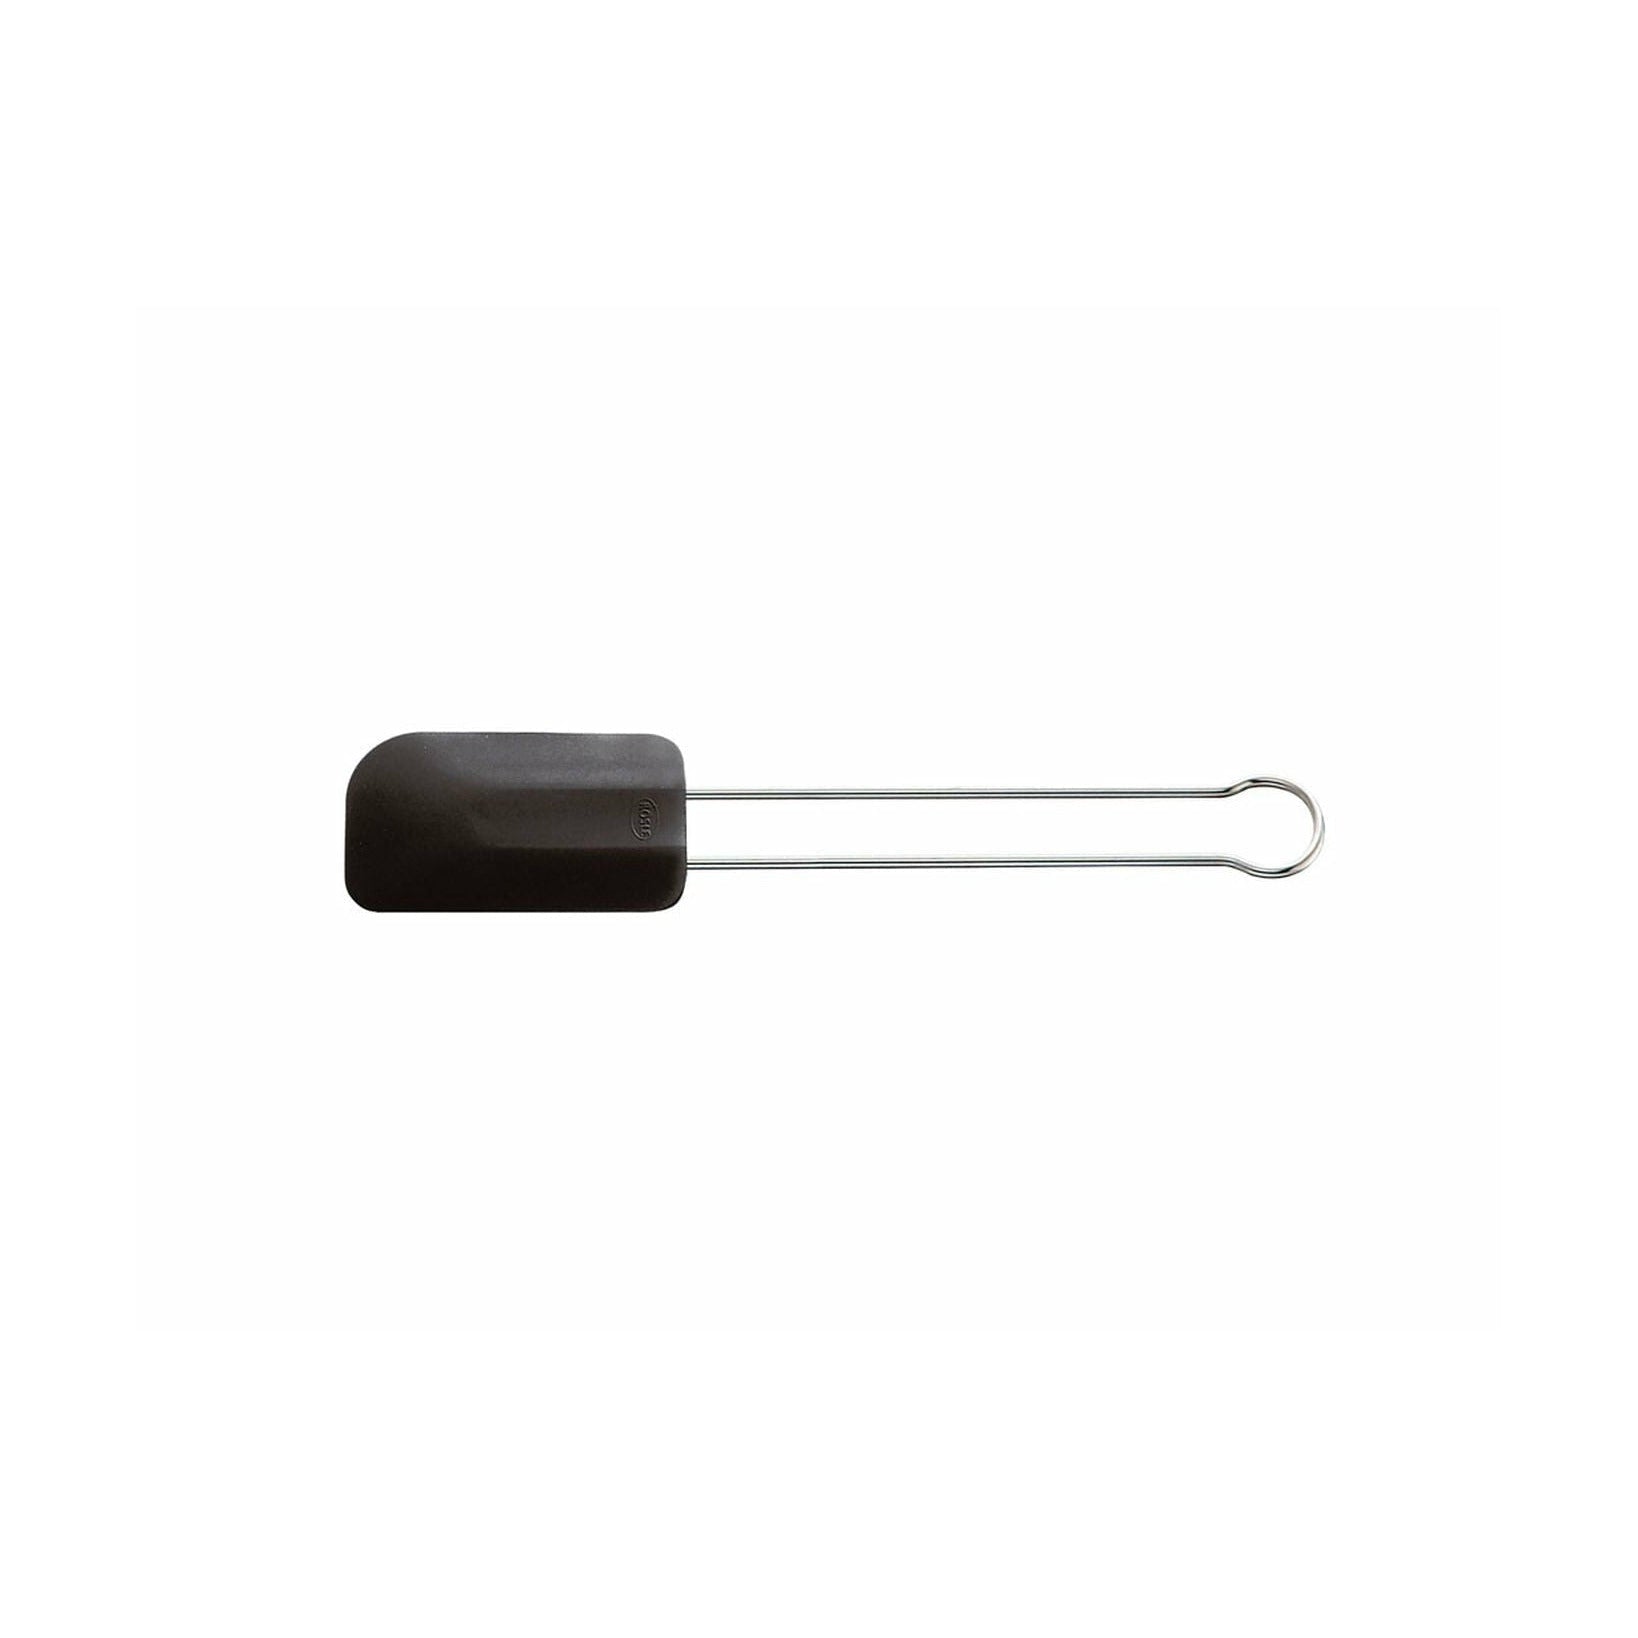 Rösle spatula / masa raspador 26 x 5 cm, acero / negro